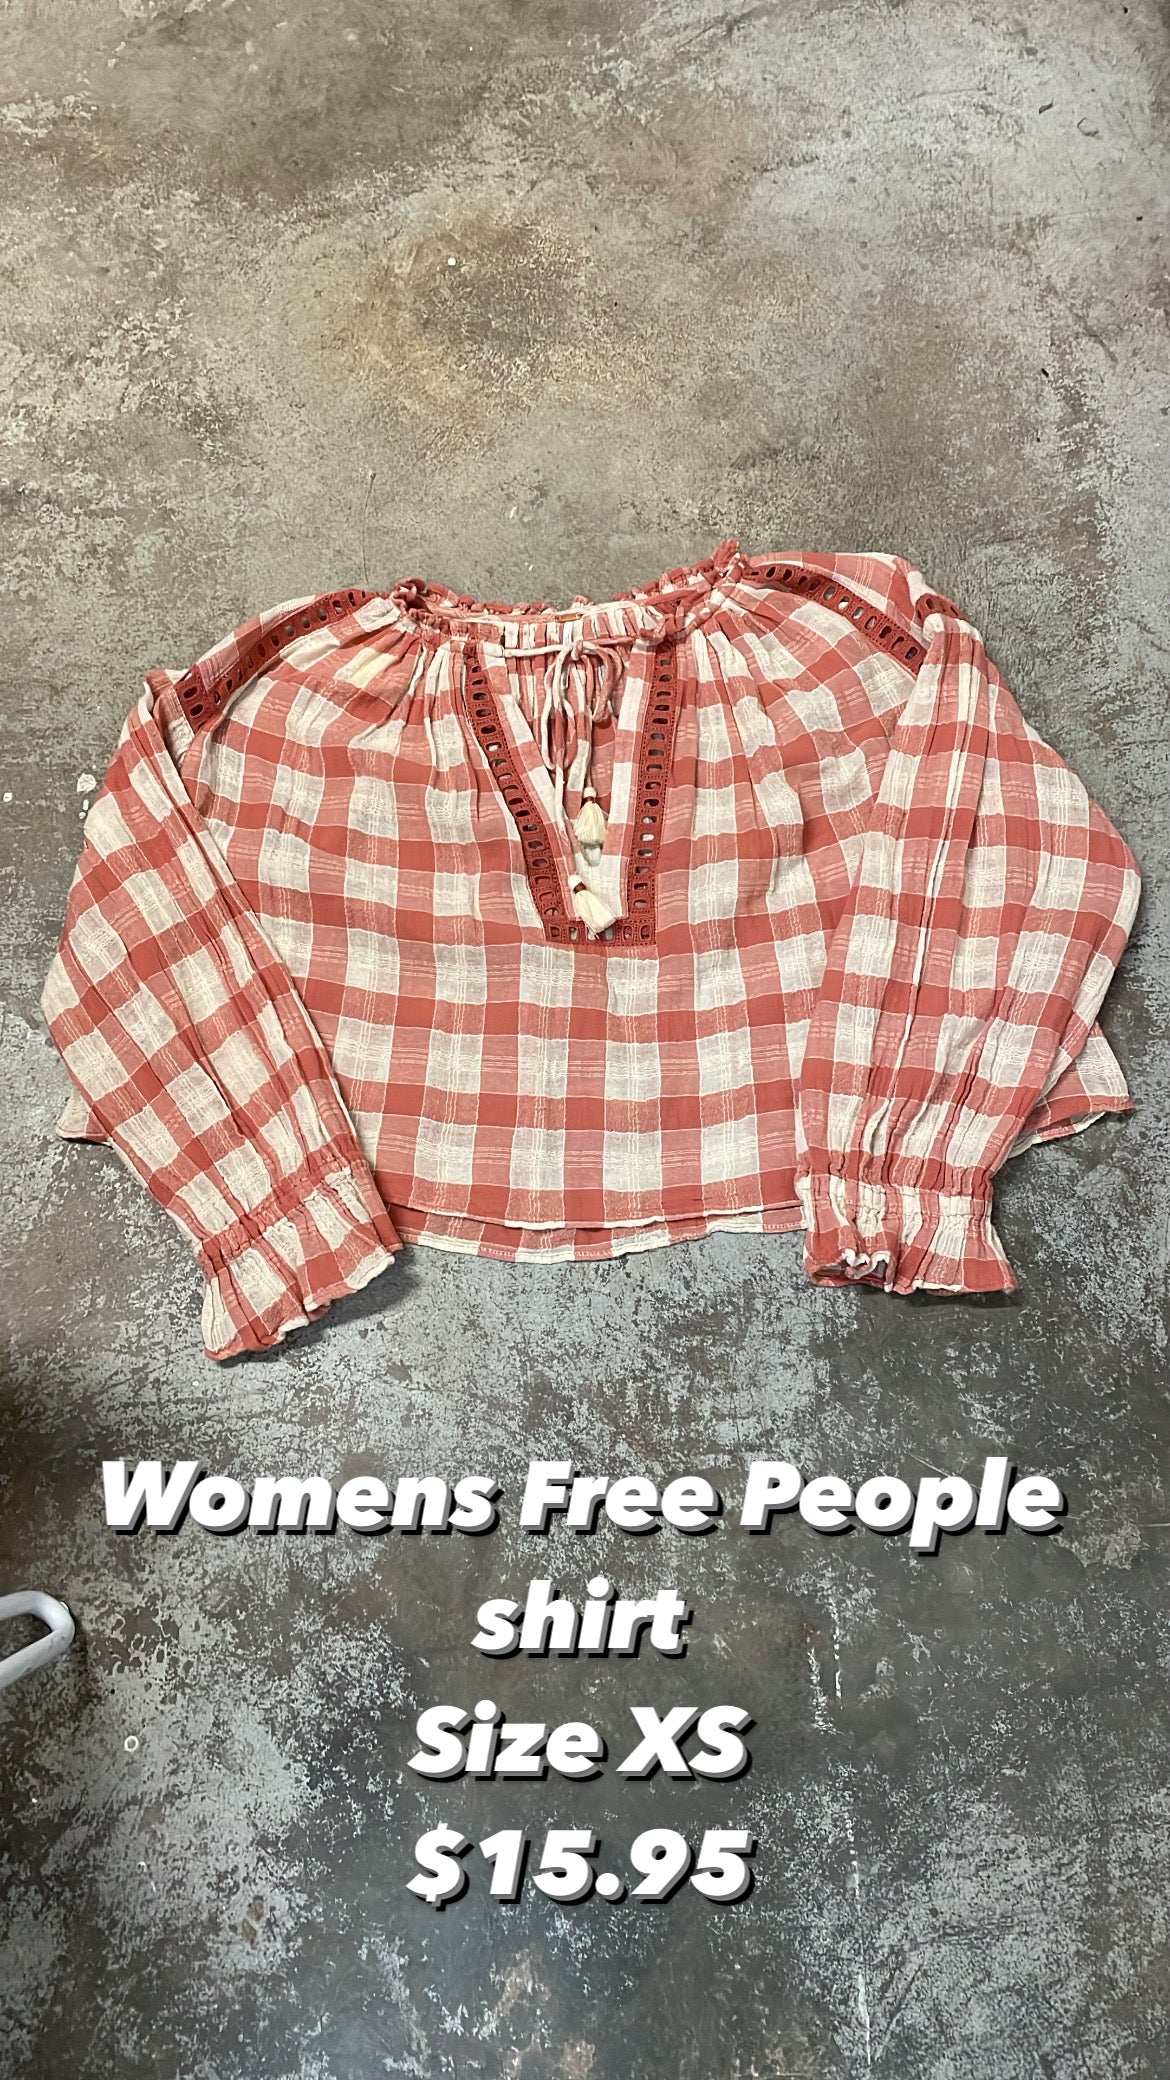 Free People shirt